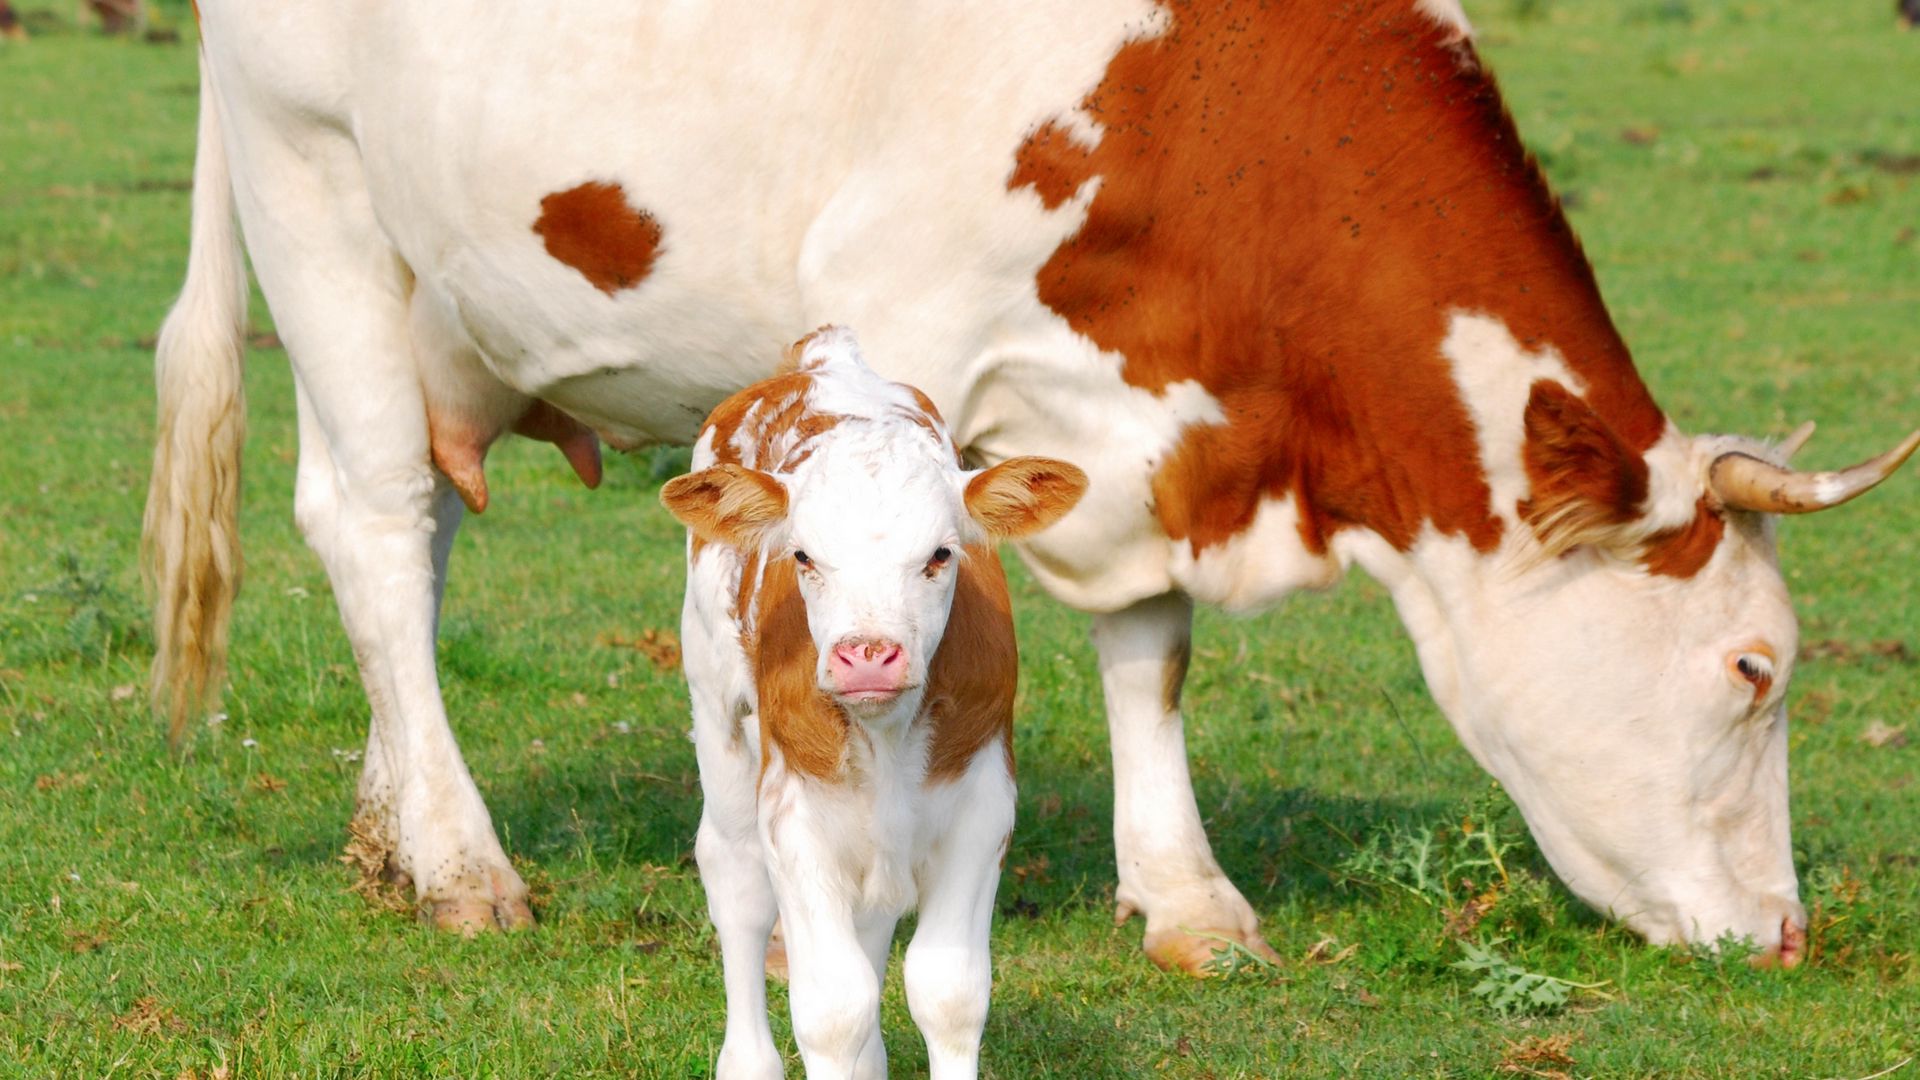 1,161 Cow Gujarat Images, Stock Photos & Vectors | Shutterstock